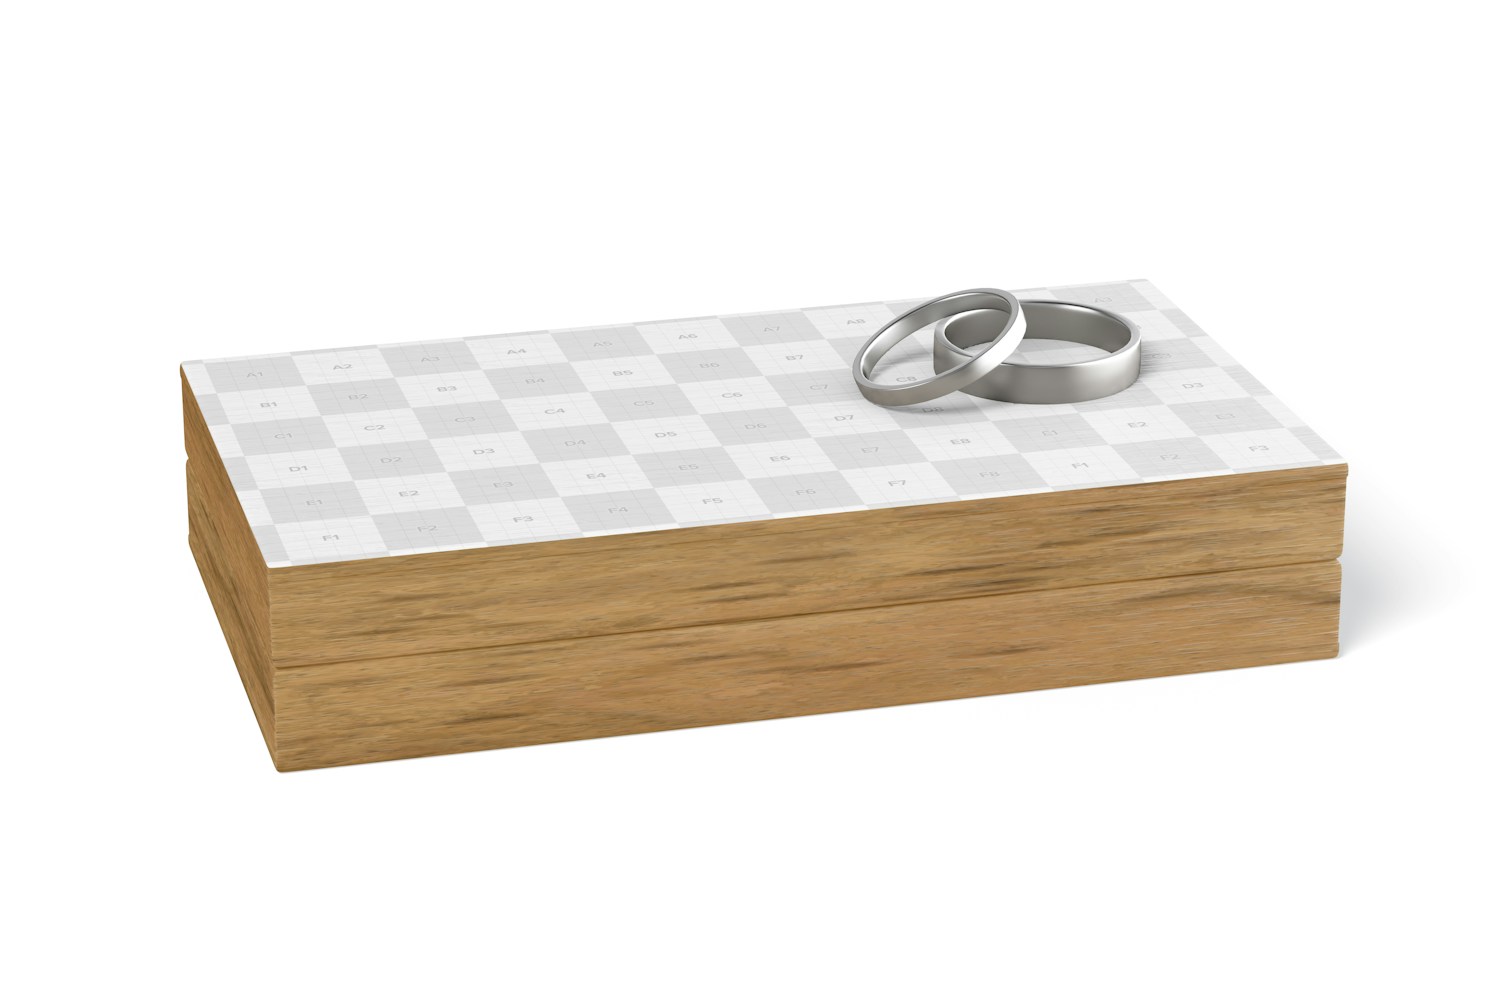 Wooden Ring Box Mockup